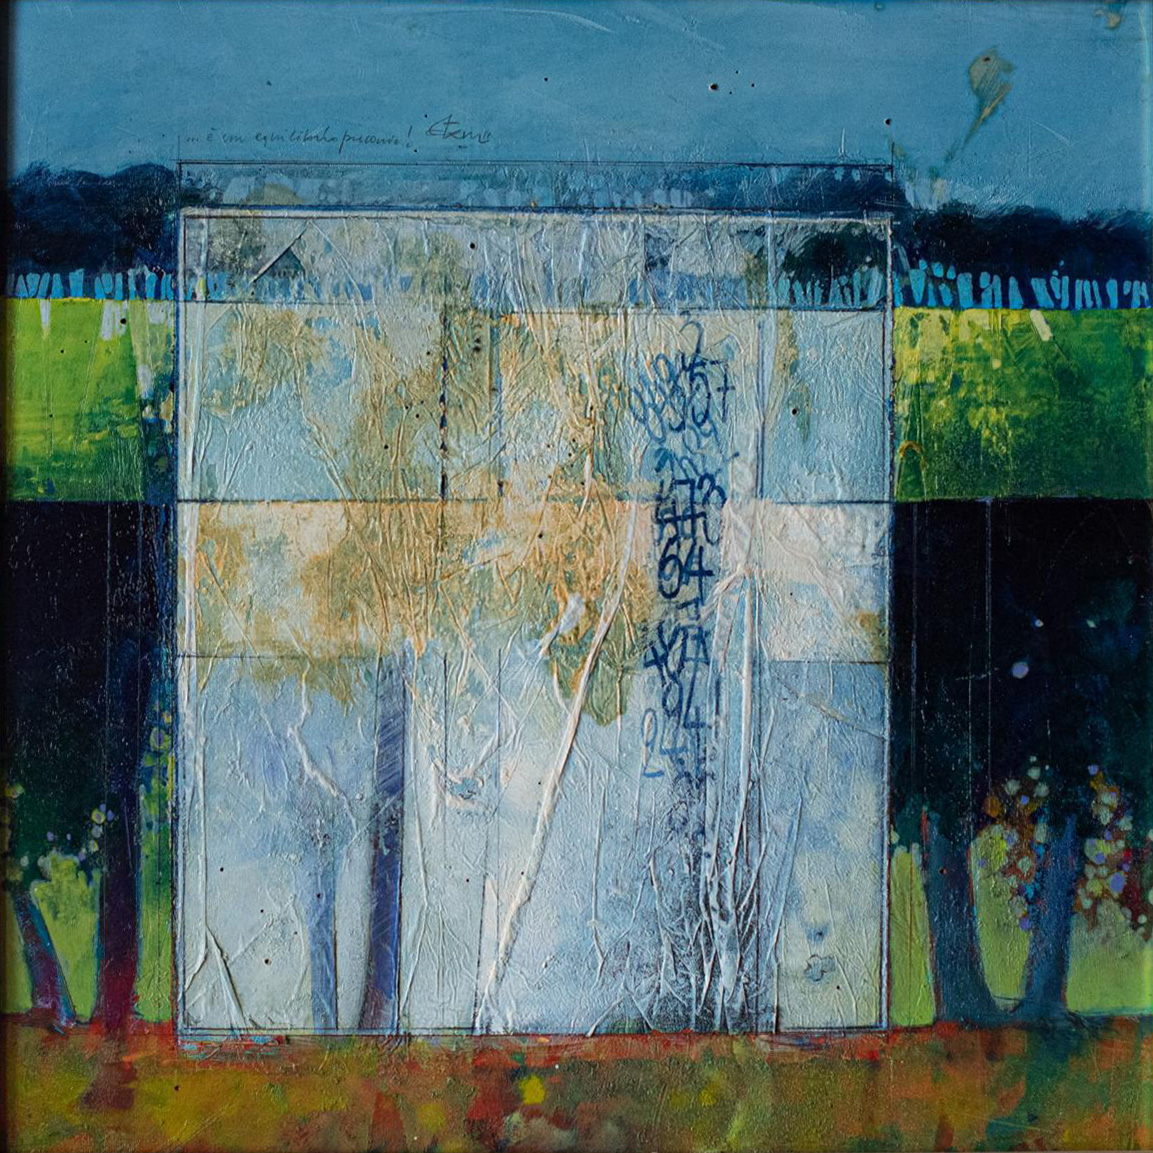 Finestre opache - Stacchini - olio e acrilico su legno, numero 185, 50x50, 1997